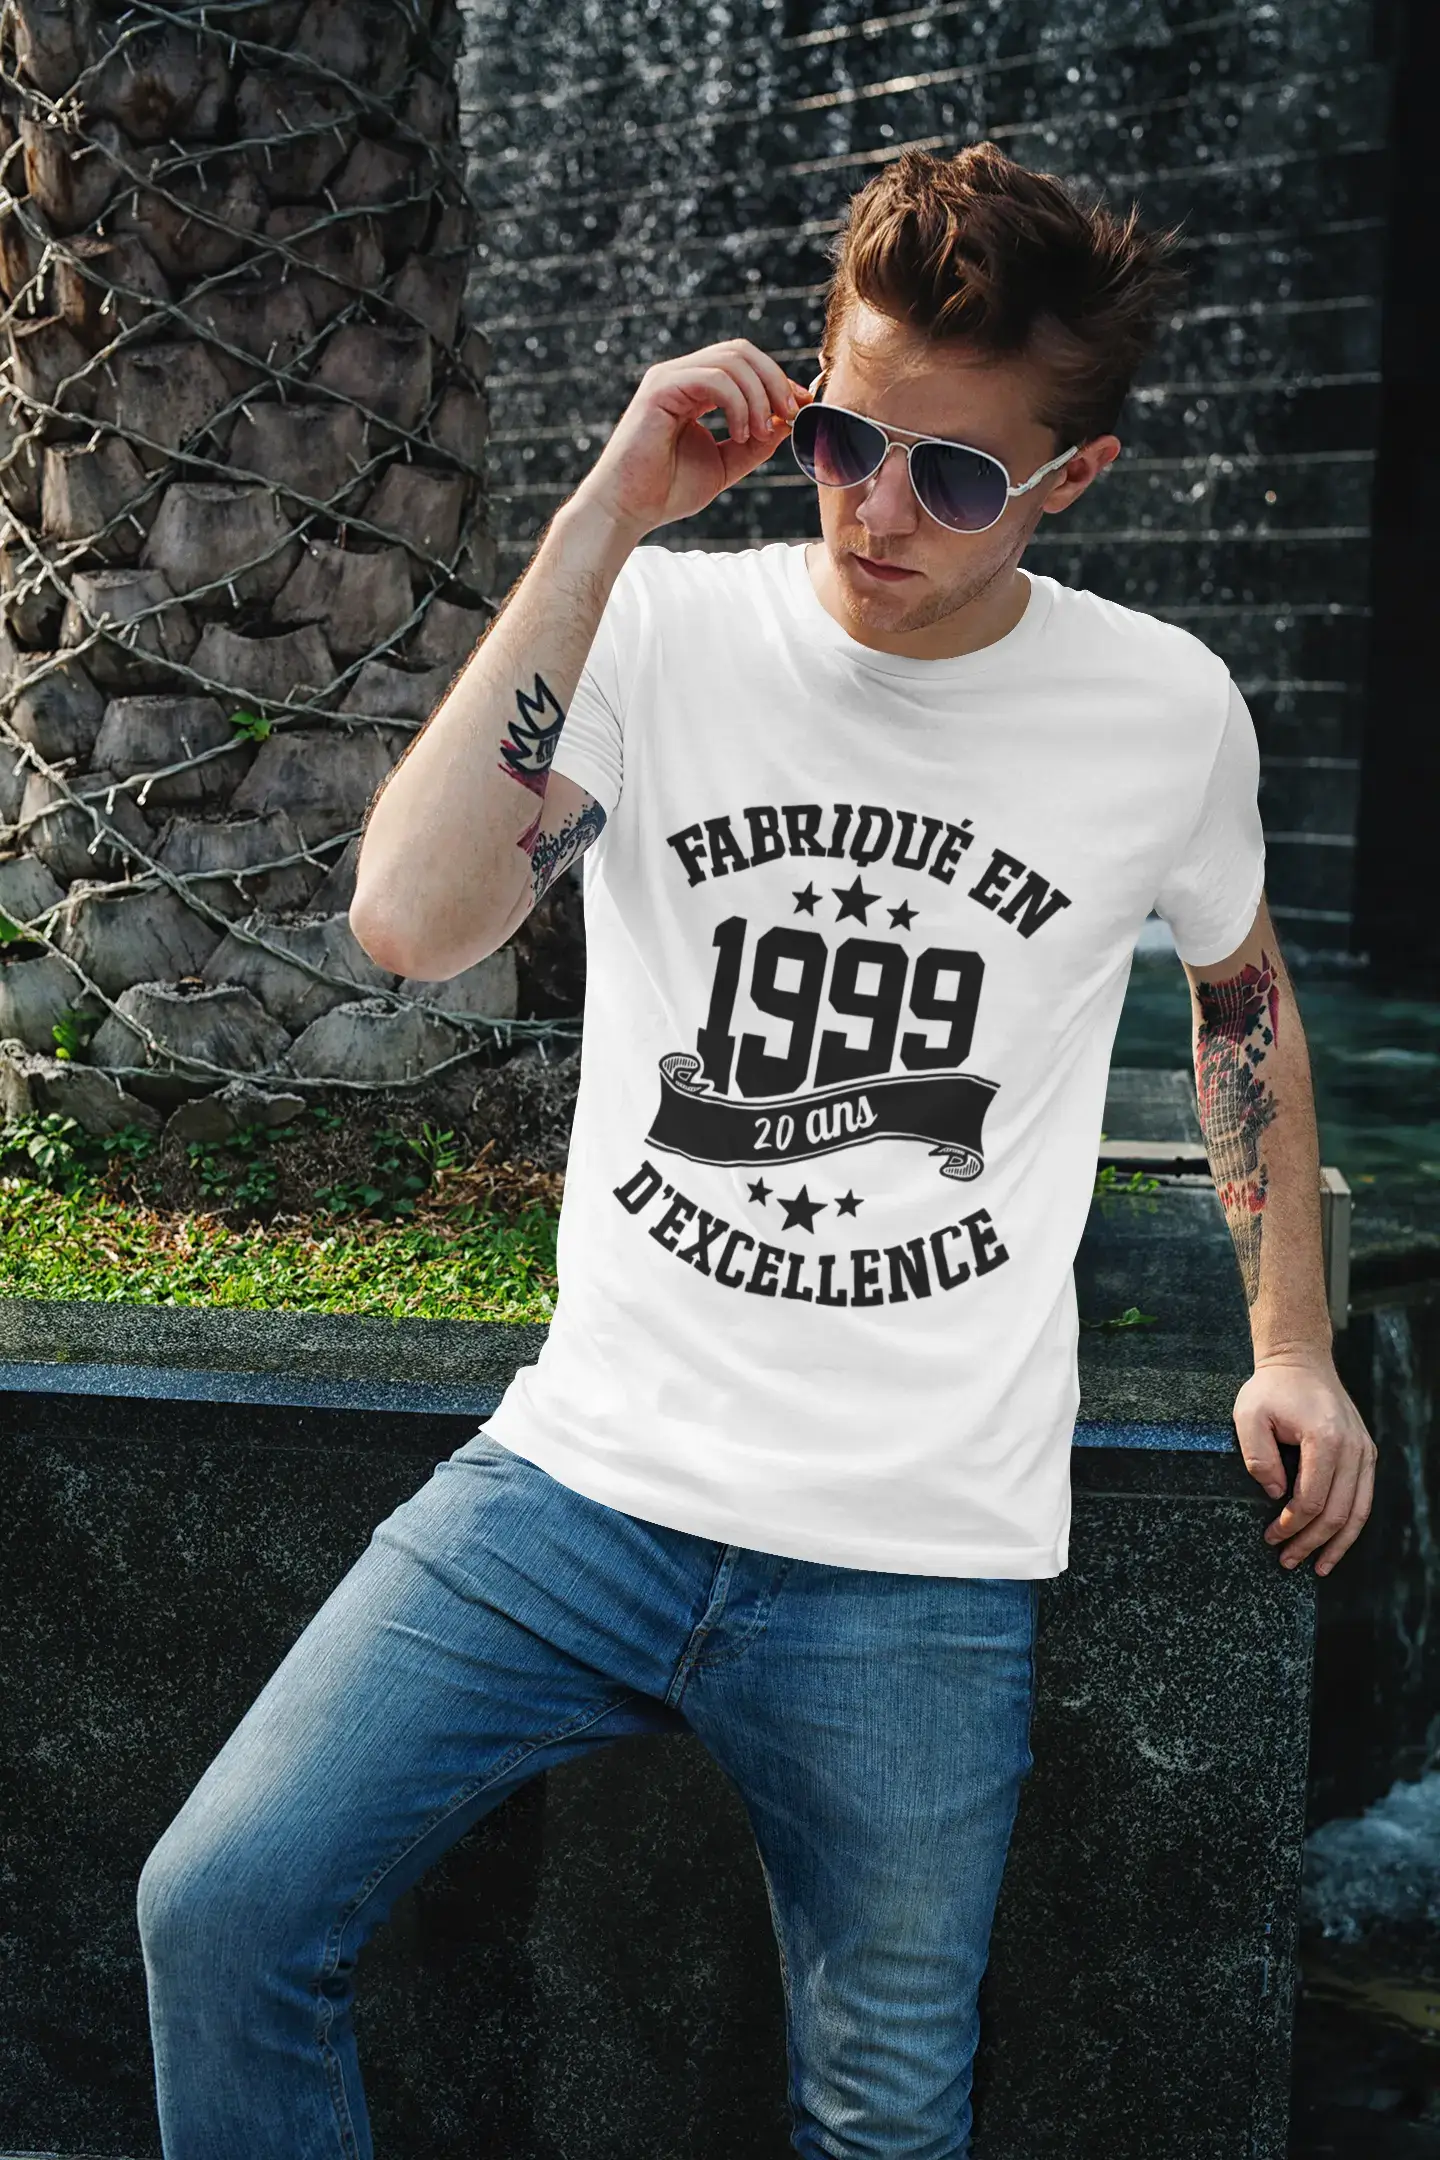 ULTRABASIC – Hergestellt im Jahr 1999, 20 Jahre alt. Geniales Unisex-T-Shirt aus weißem Chiné